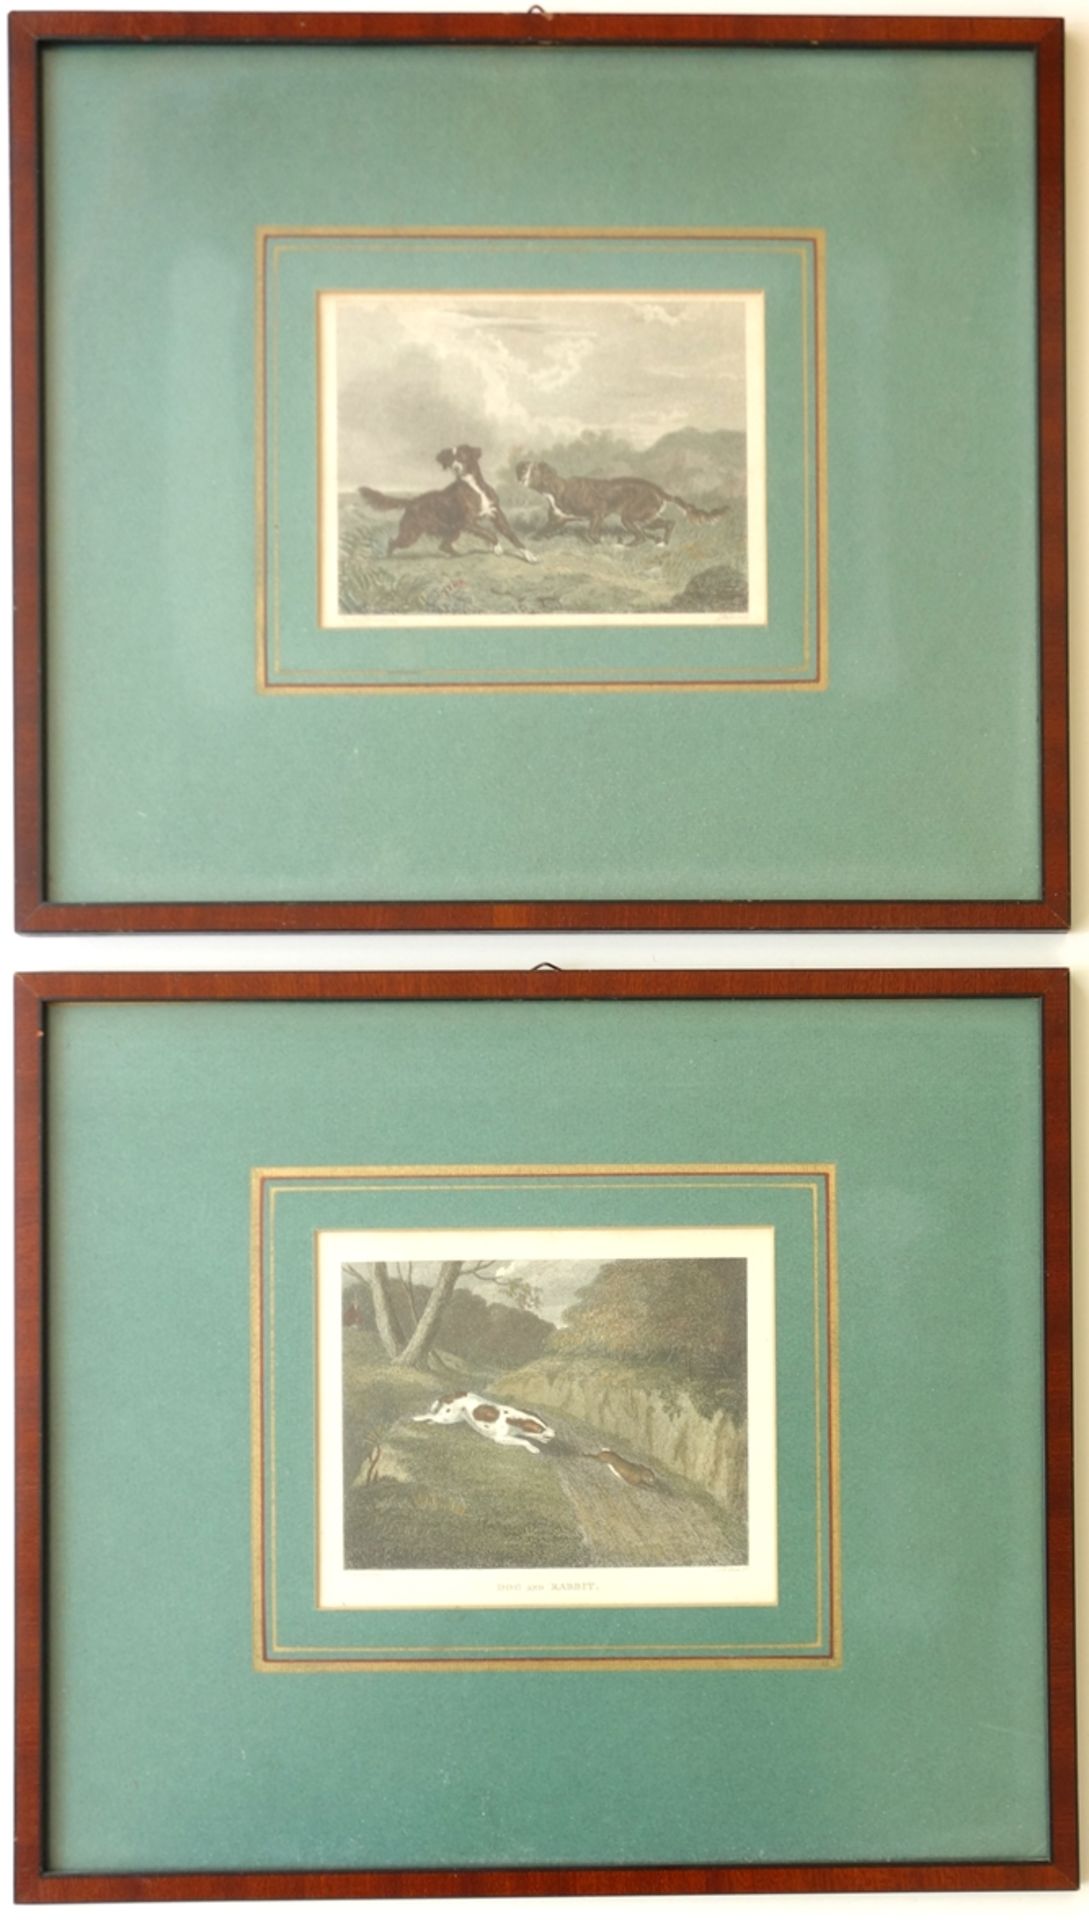 2 kolorierte Stahlstiche "Jagdhunde", 19. Jahrhundert, in Passepartout, verglast gerahmt, Gesamt-H*B